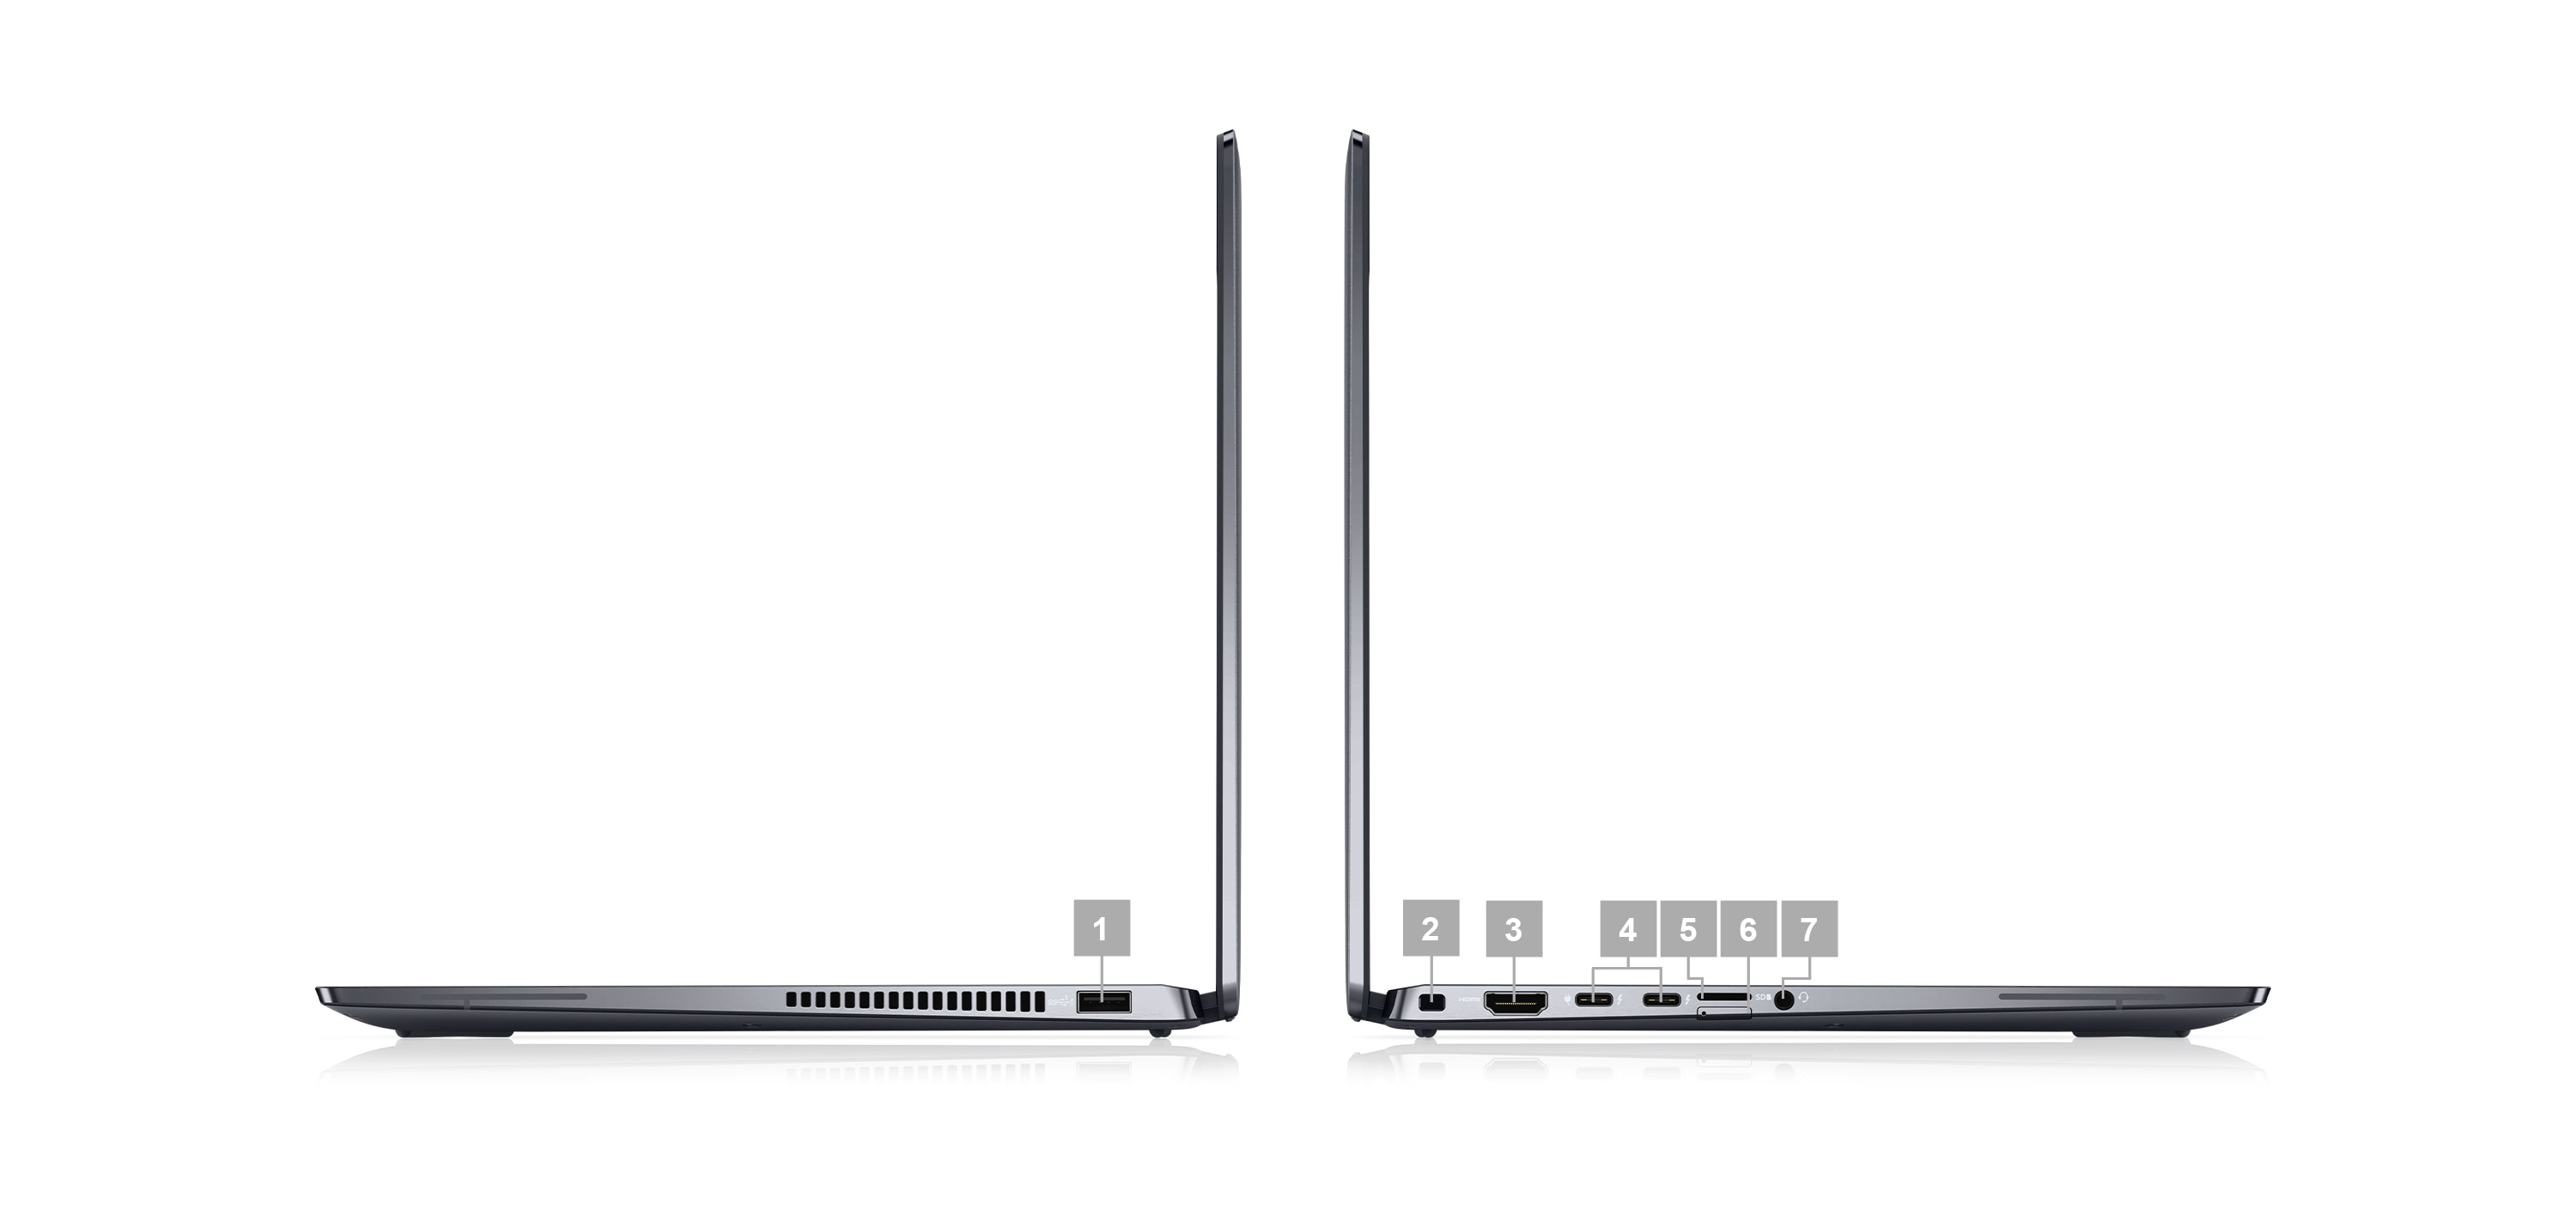 Két, oldalirányban elhelyezett Dell Latitude 9430, 14 hüvelykes 2 az 1-ben laptop képe, a csatlakozókat jelző, 1 és 7 közötti számokkal.